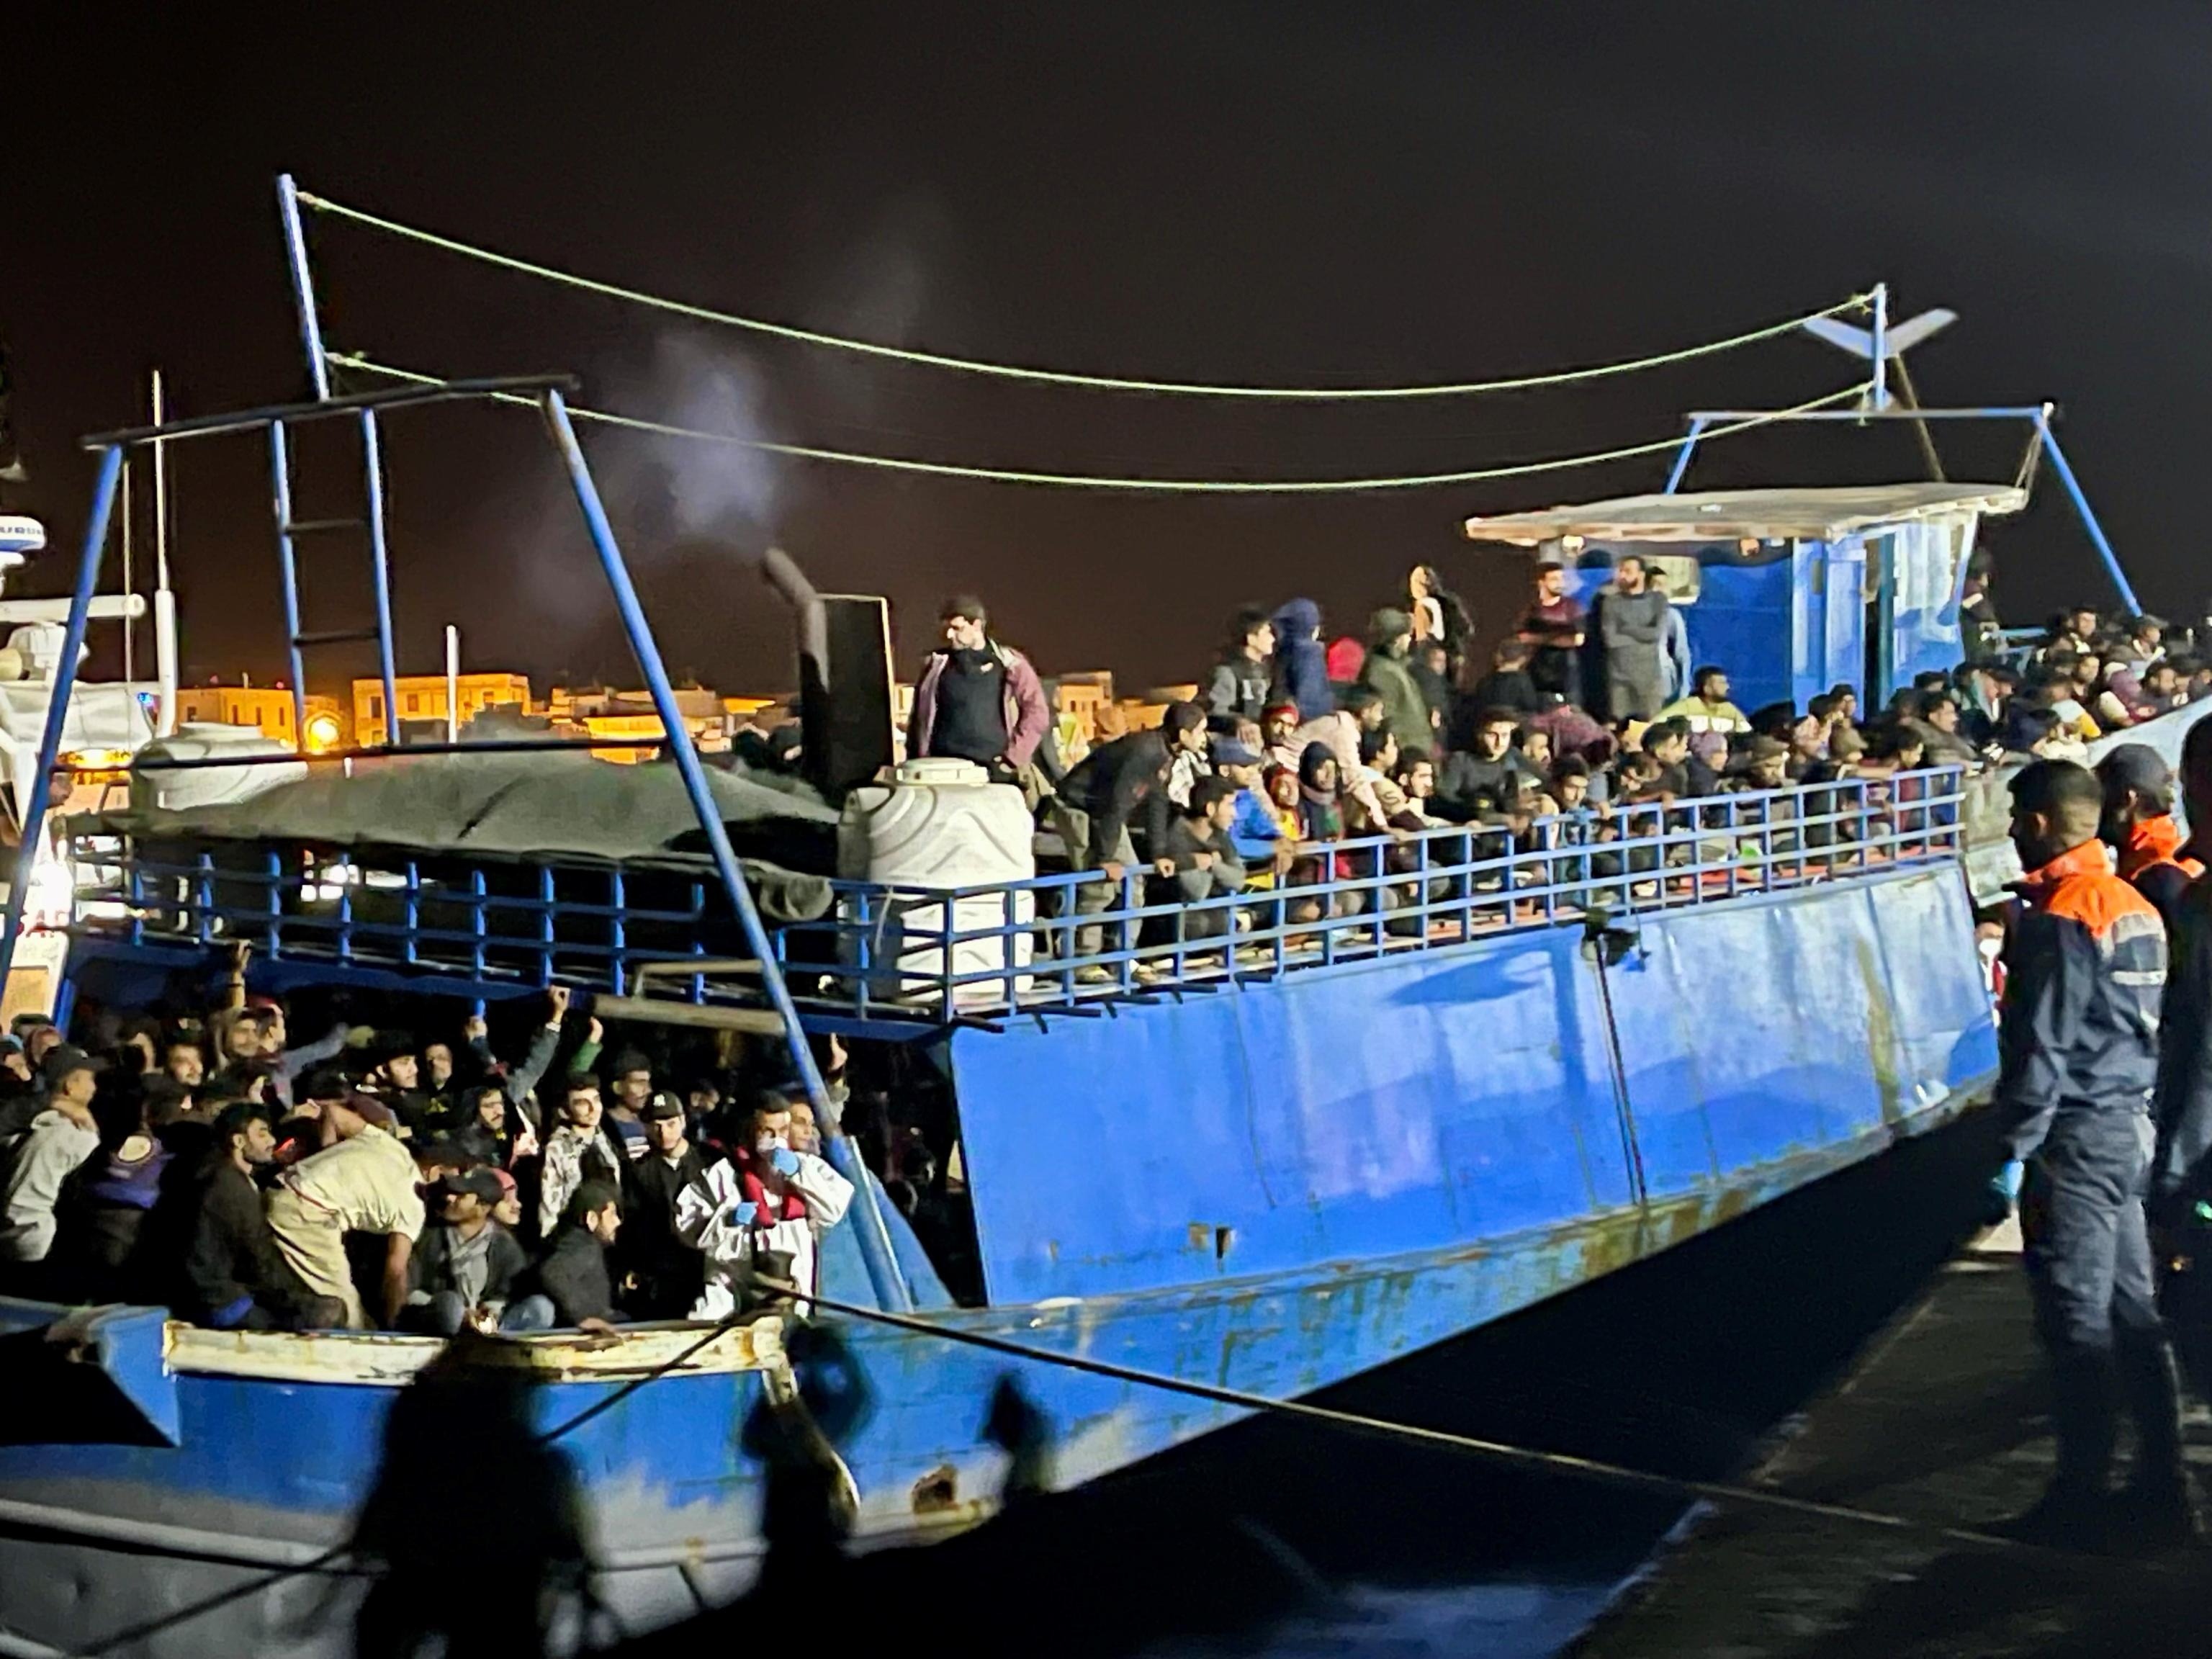 Italia firma un acuerdo para enviar migrantes a Albania bajo una lluvia de críticas